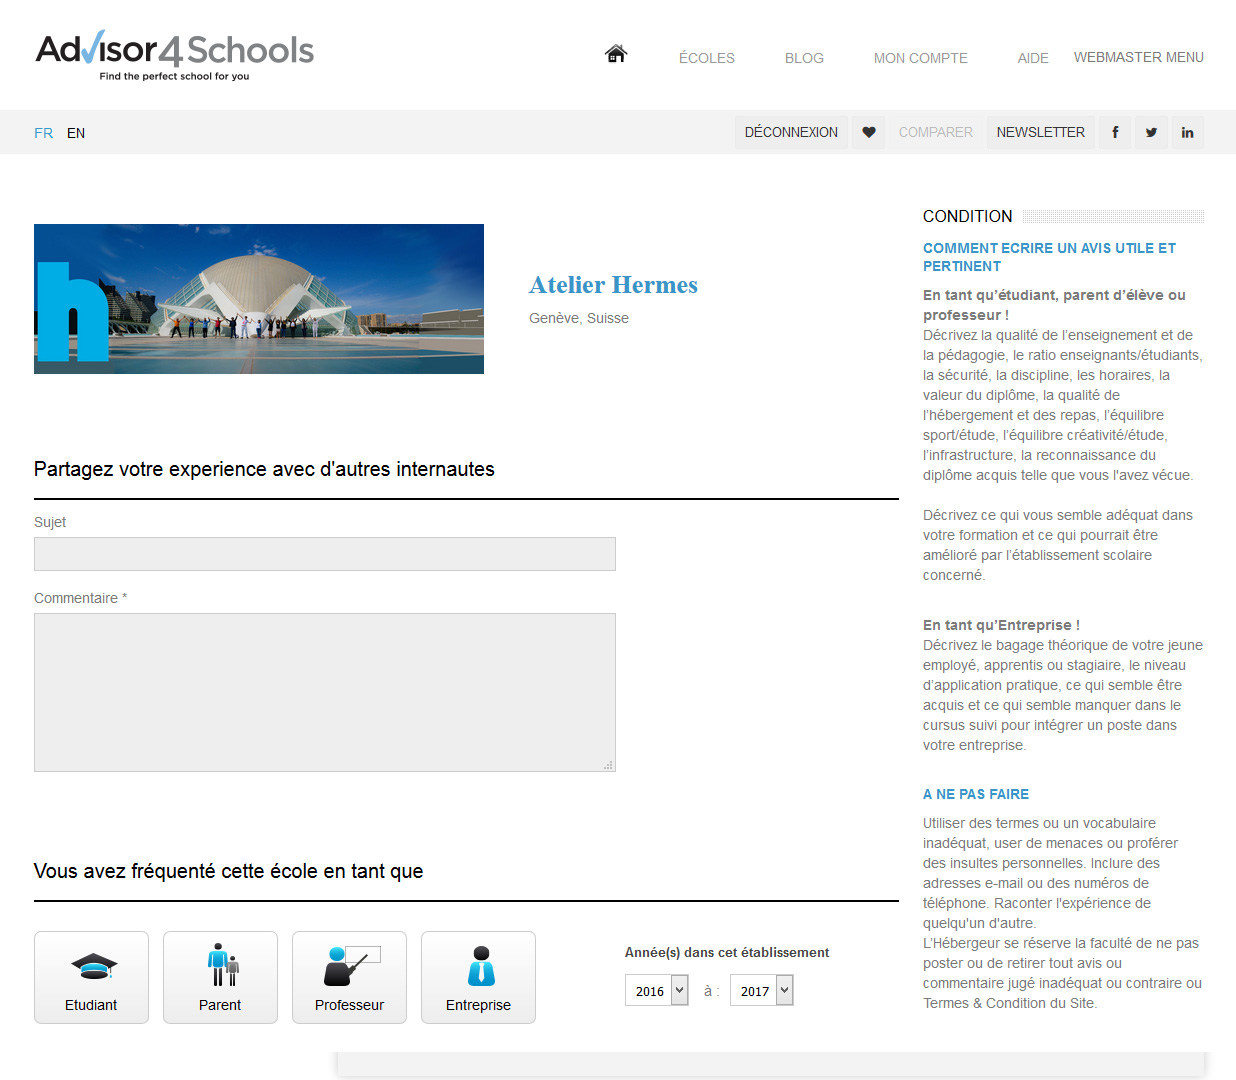 Signature de Luxe - Website - Advisor4Schools